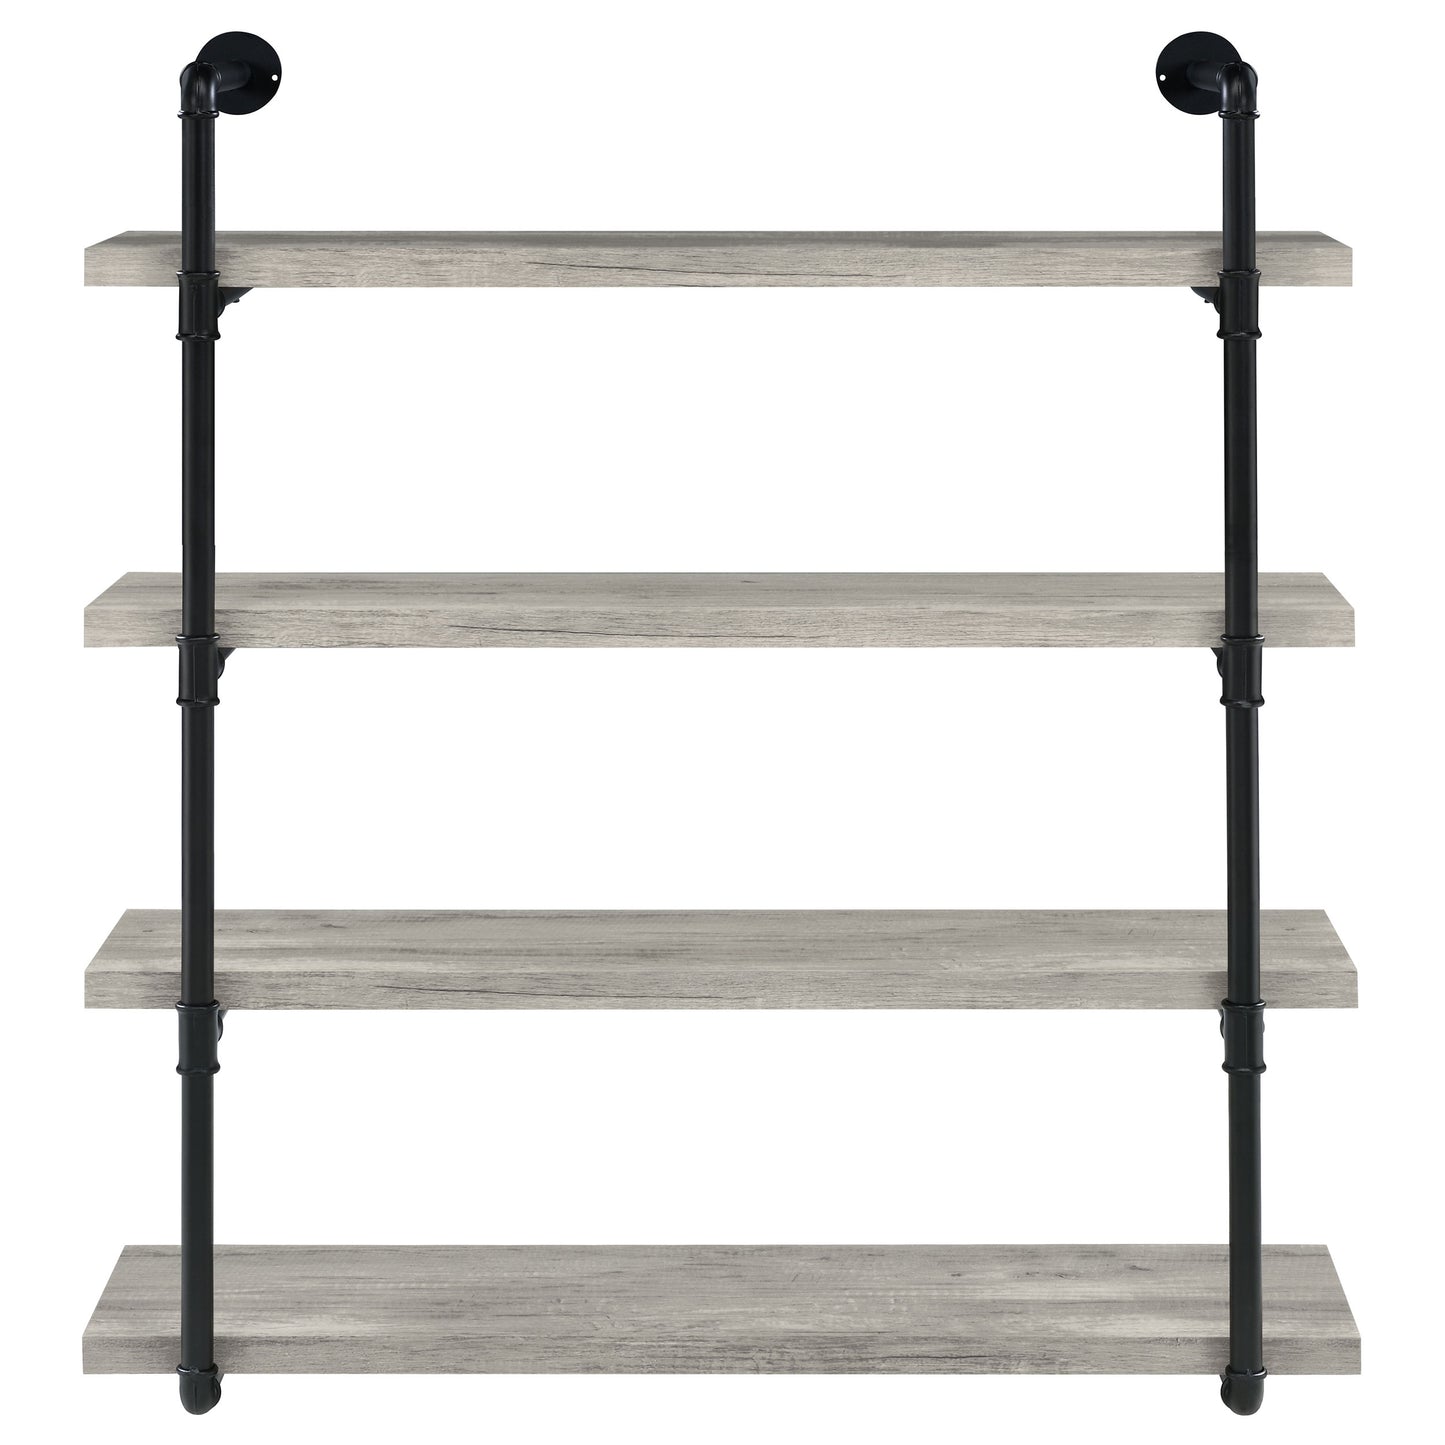 Elmcrest 40-inch Wall Shelf Black and Grey Driftwood